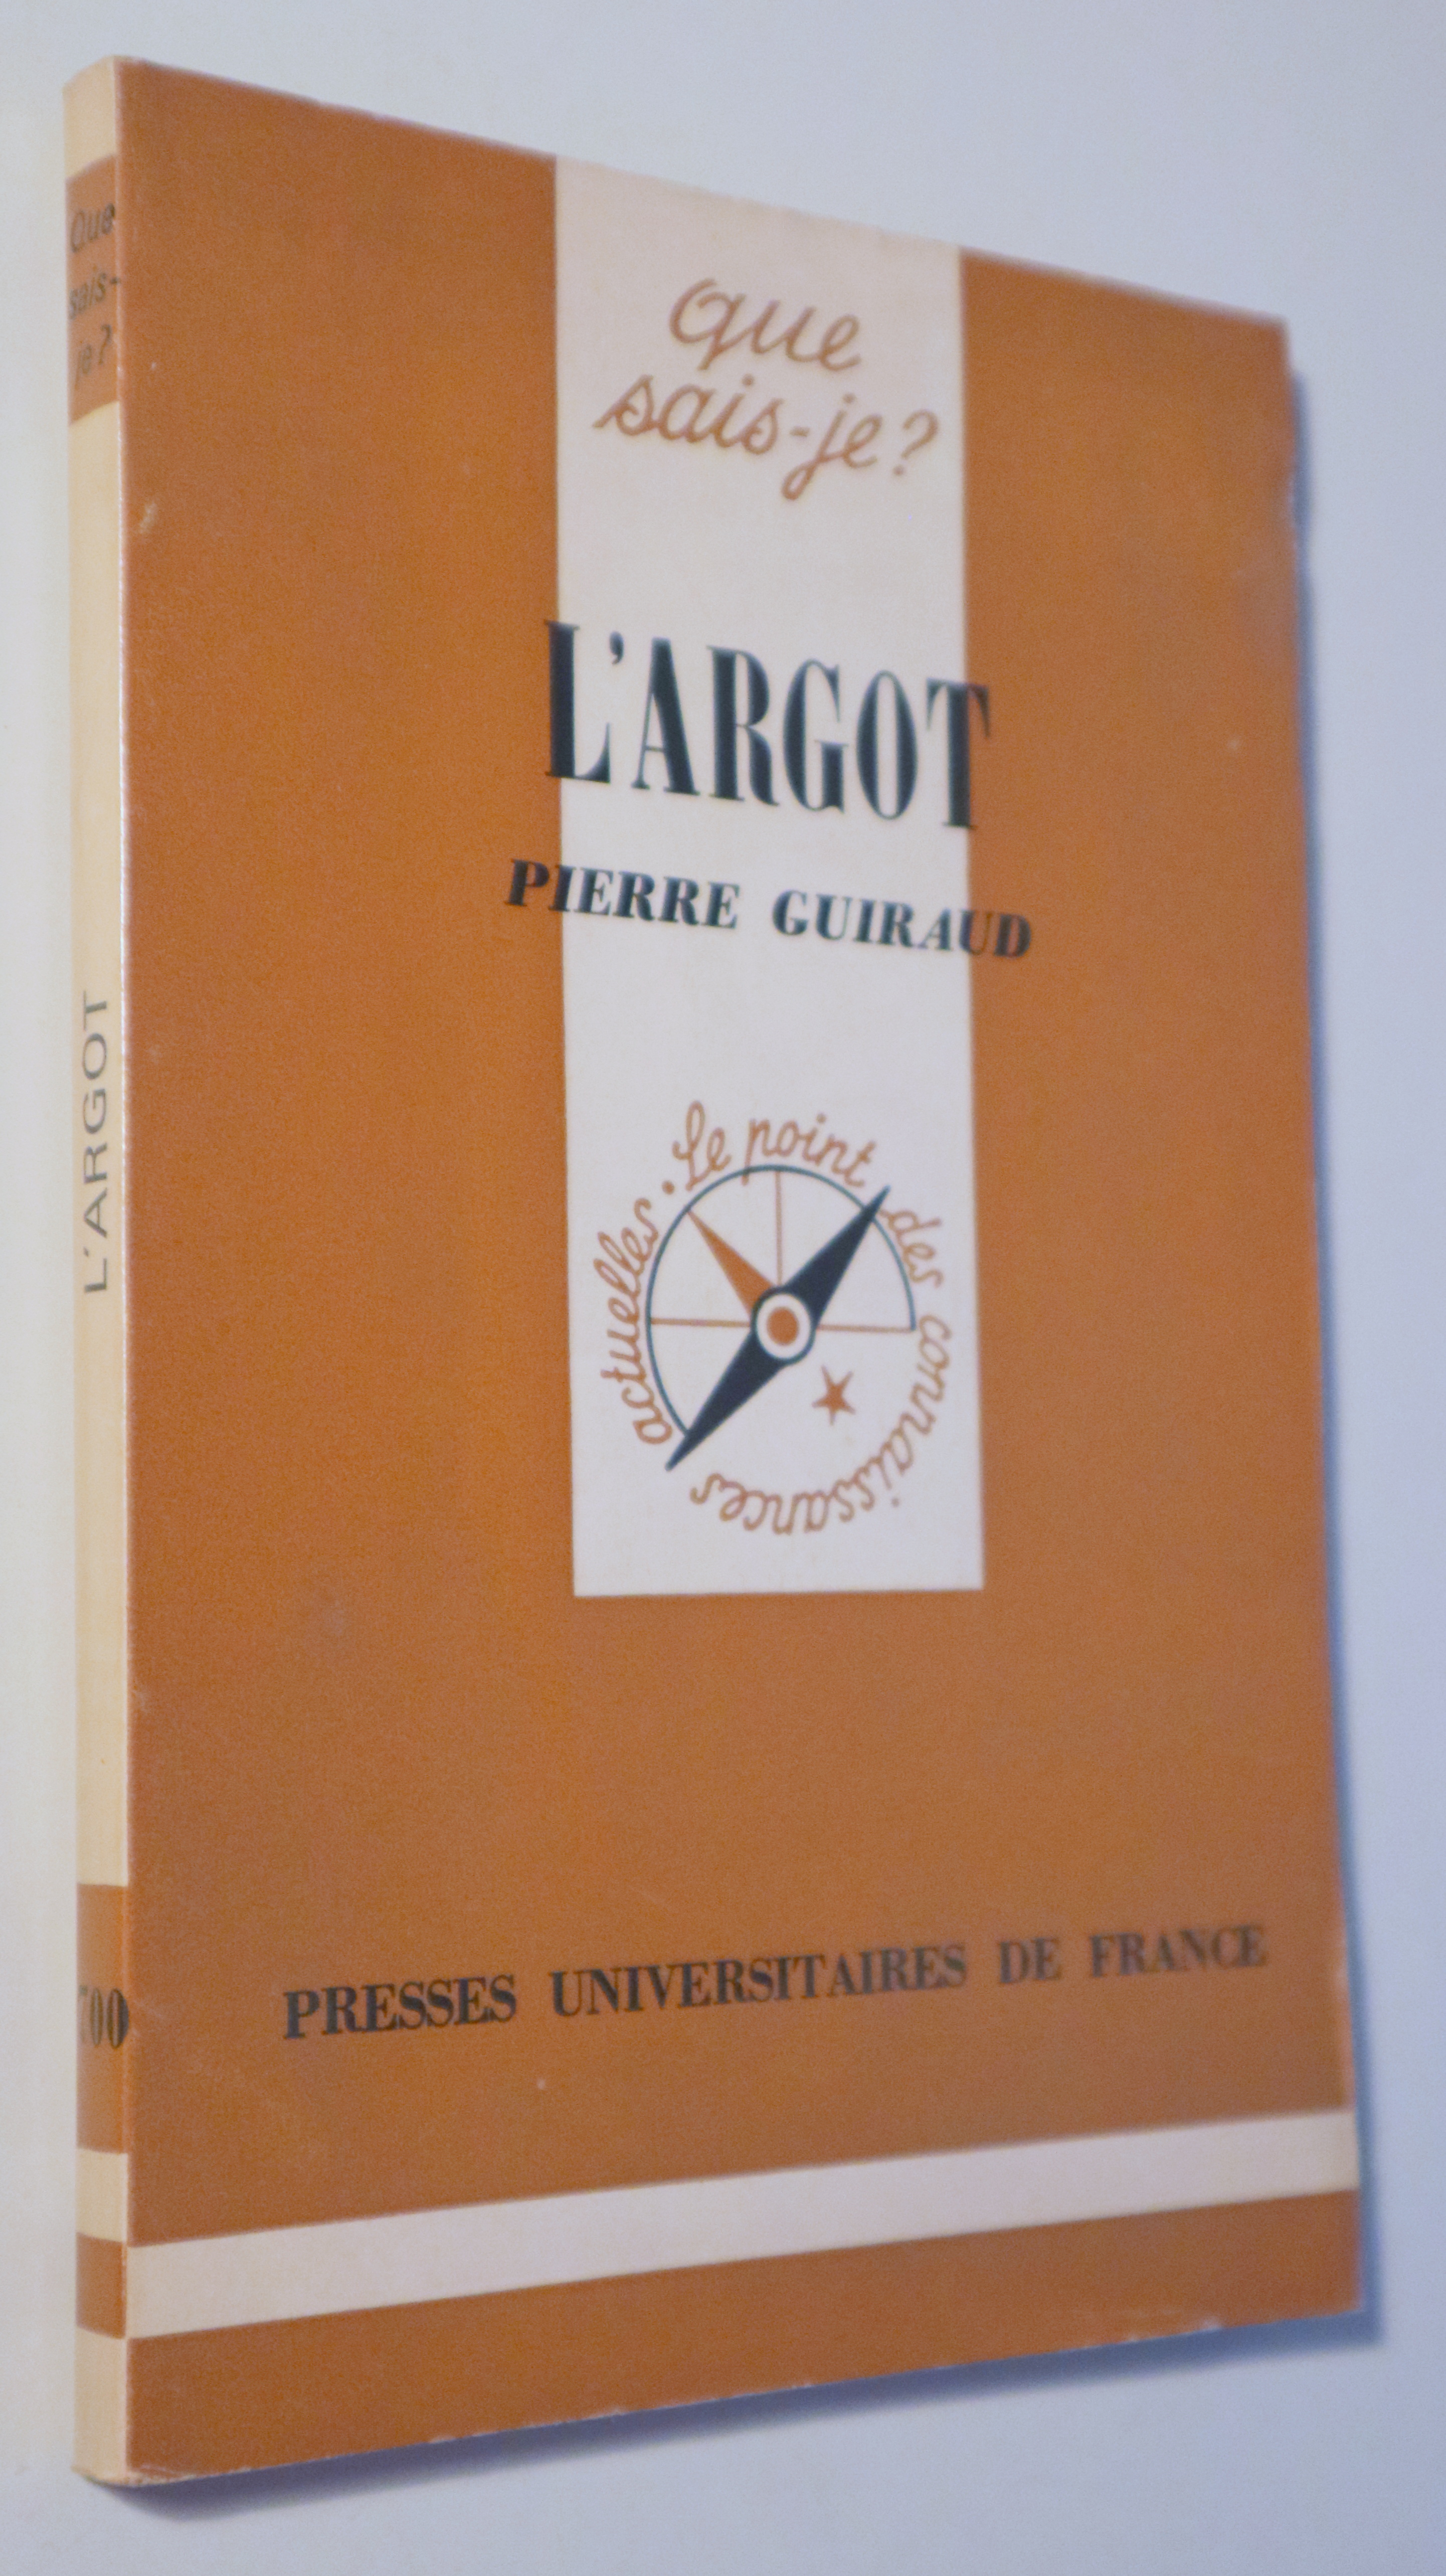 L'ARGOT - Paris 1976